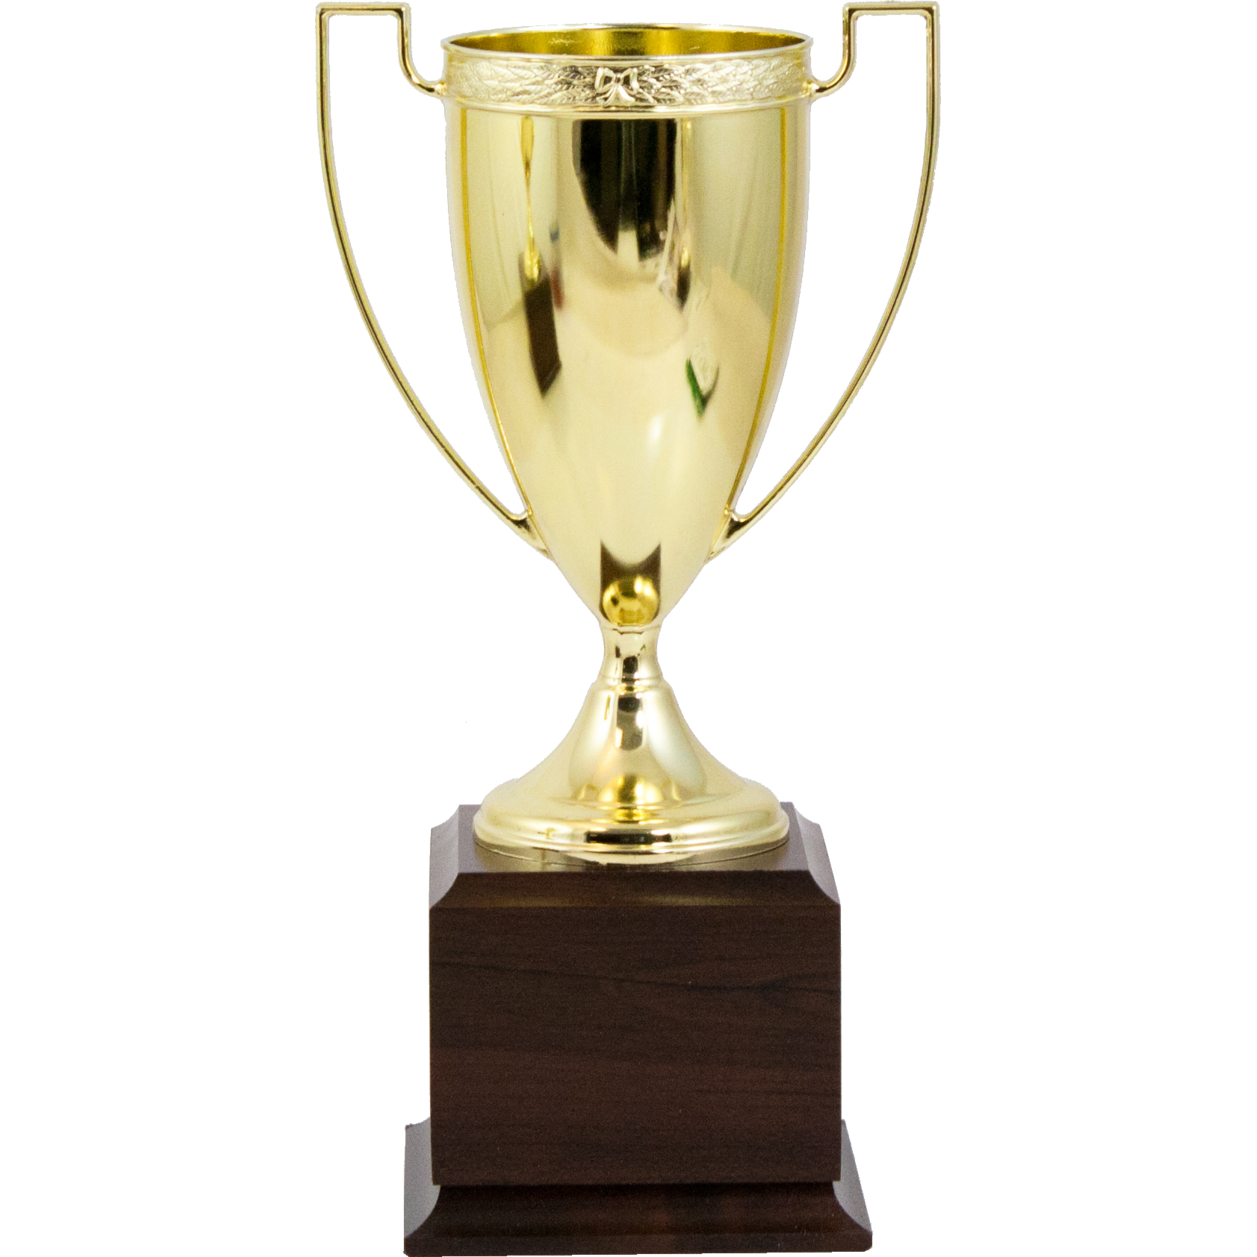 Classic Gold Metal Award Cup